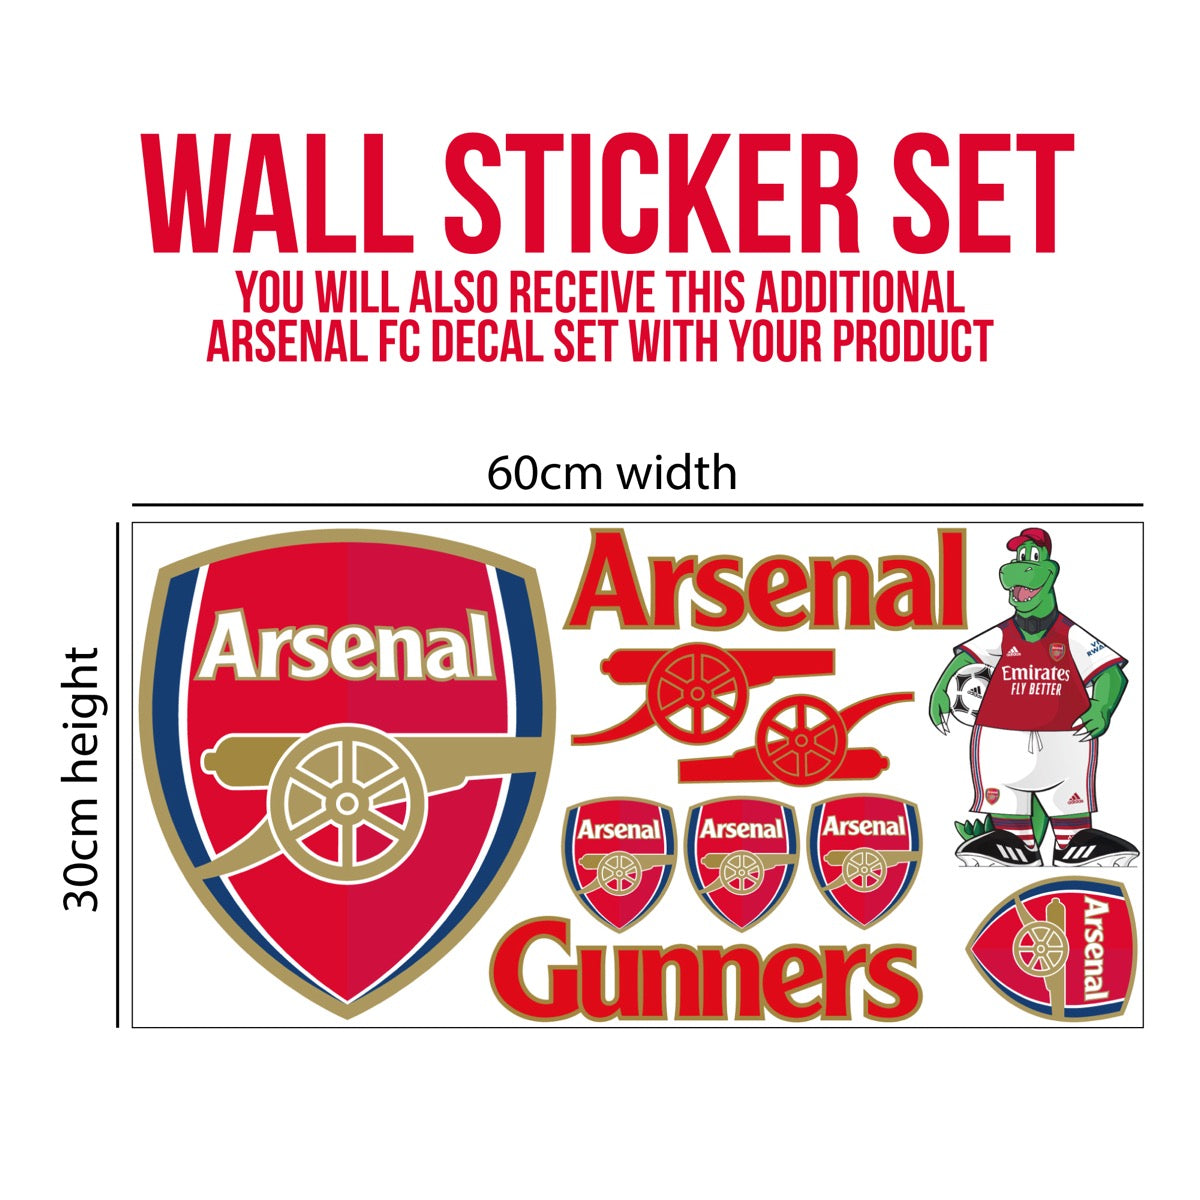 Arsenal Football Club - Crest & Gooners Song - Gunners Wall Sticker Set Vinyl